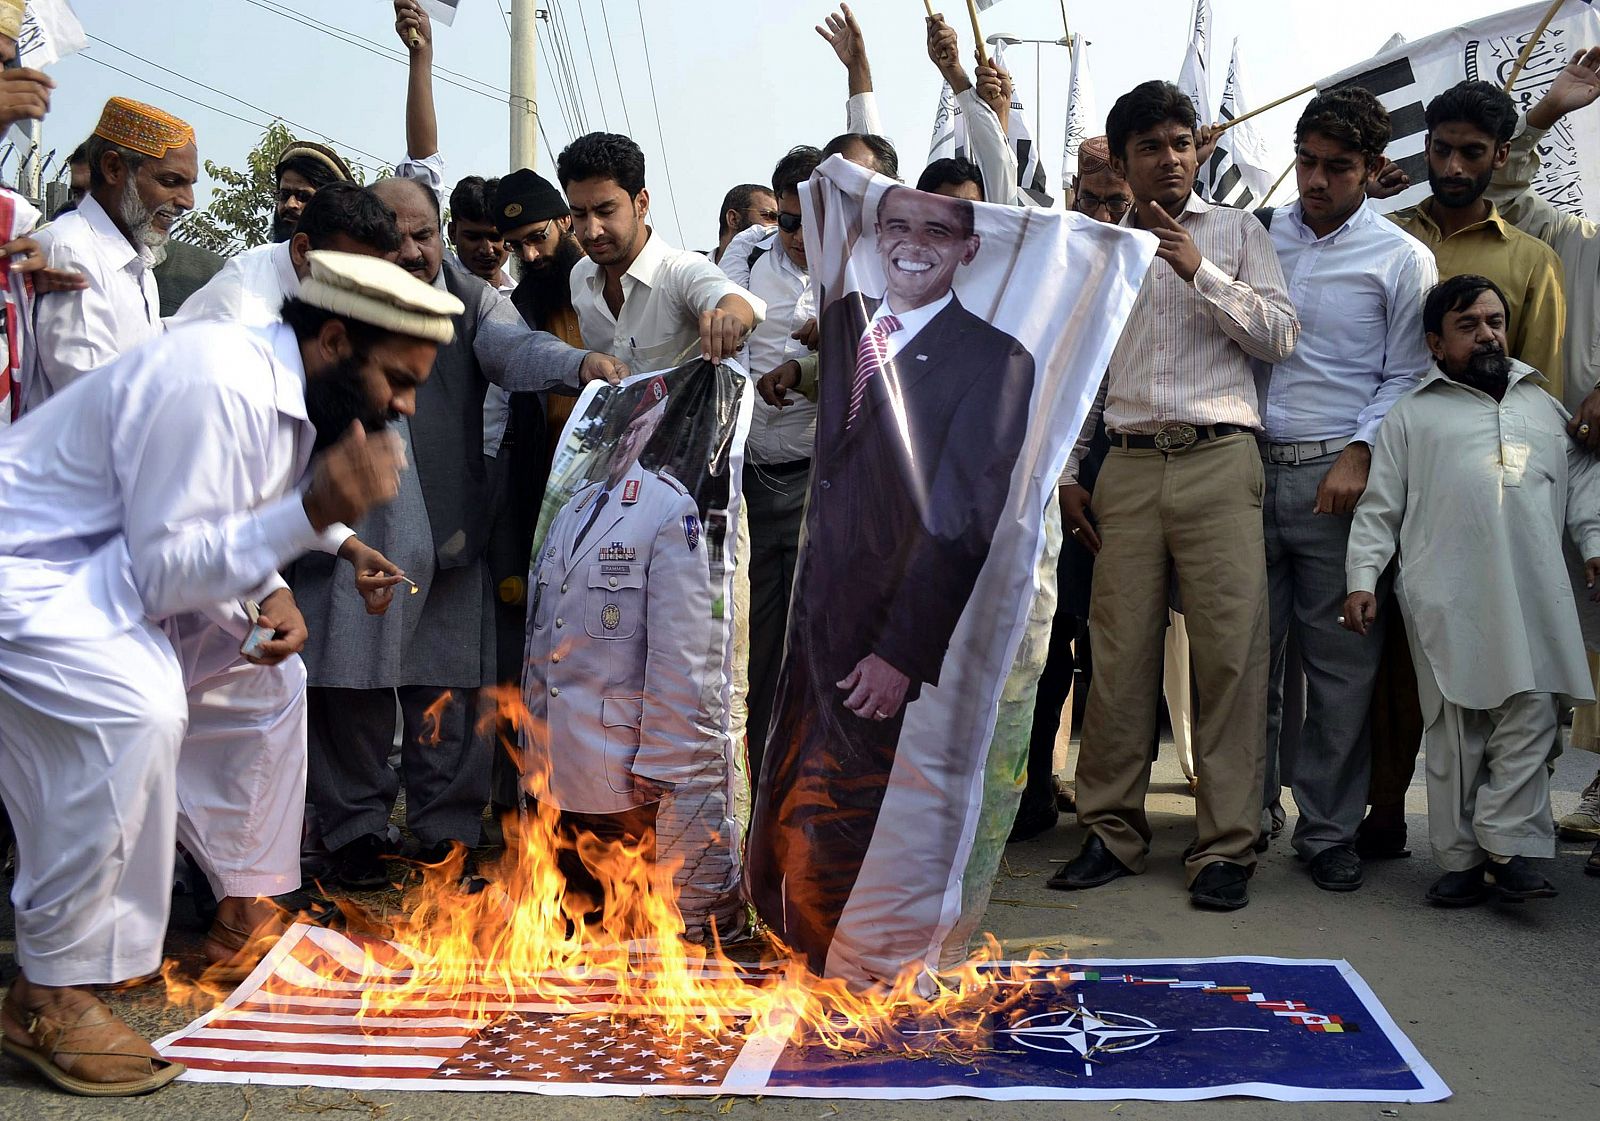 Partidarios del partido islamista ilegal Jamaat ud Dawa queman una imagen del presidente de EE.UU., Barack Obama en Multan, Pakistán